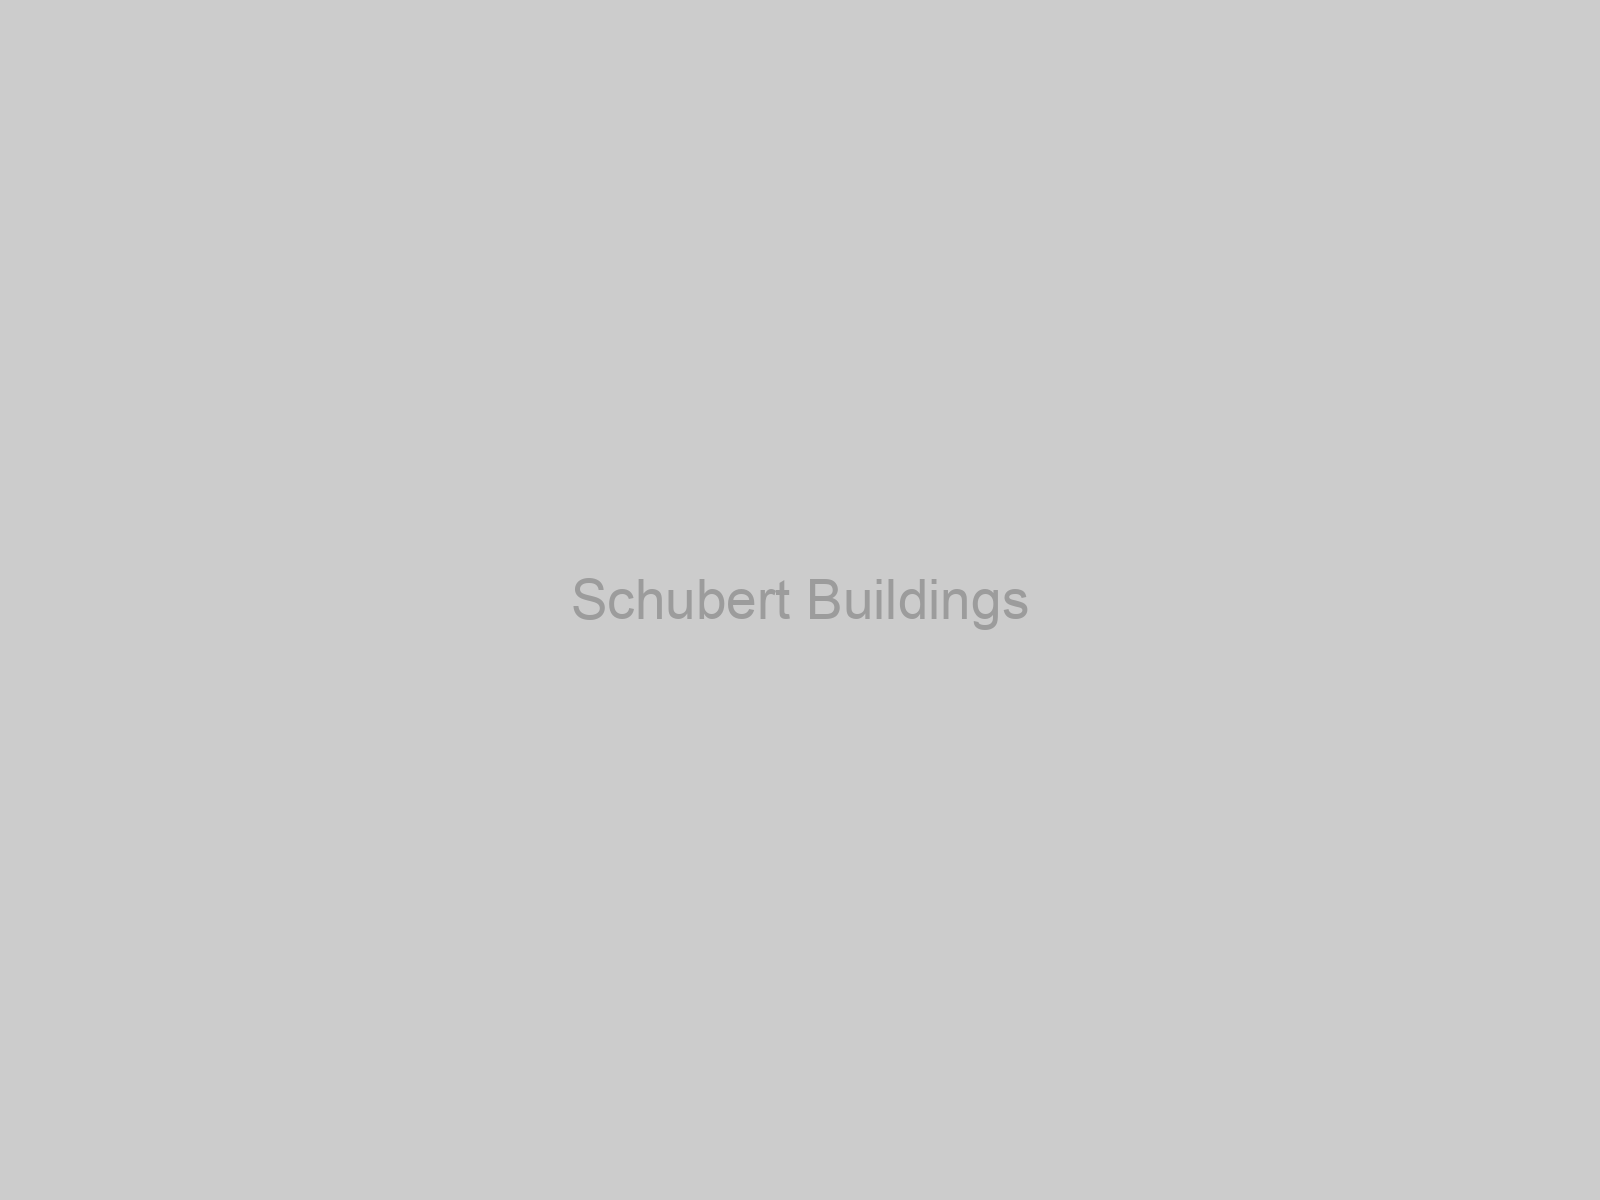 Schubert Buildings